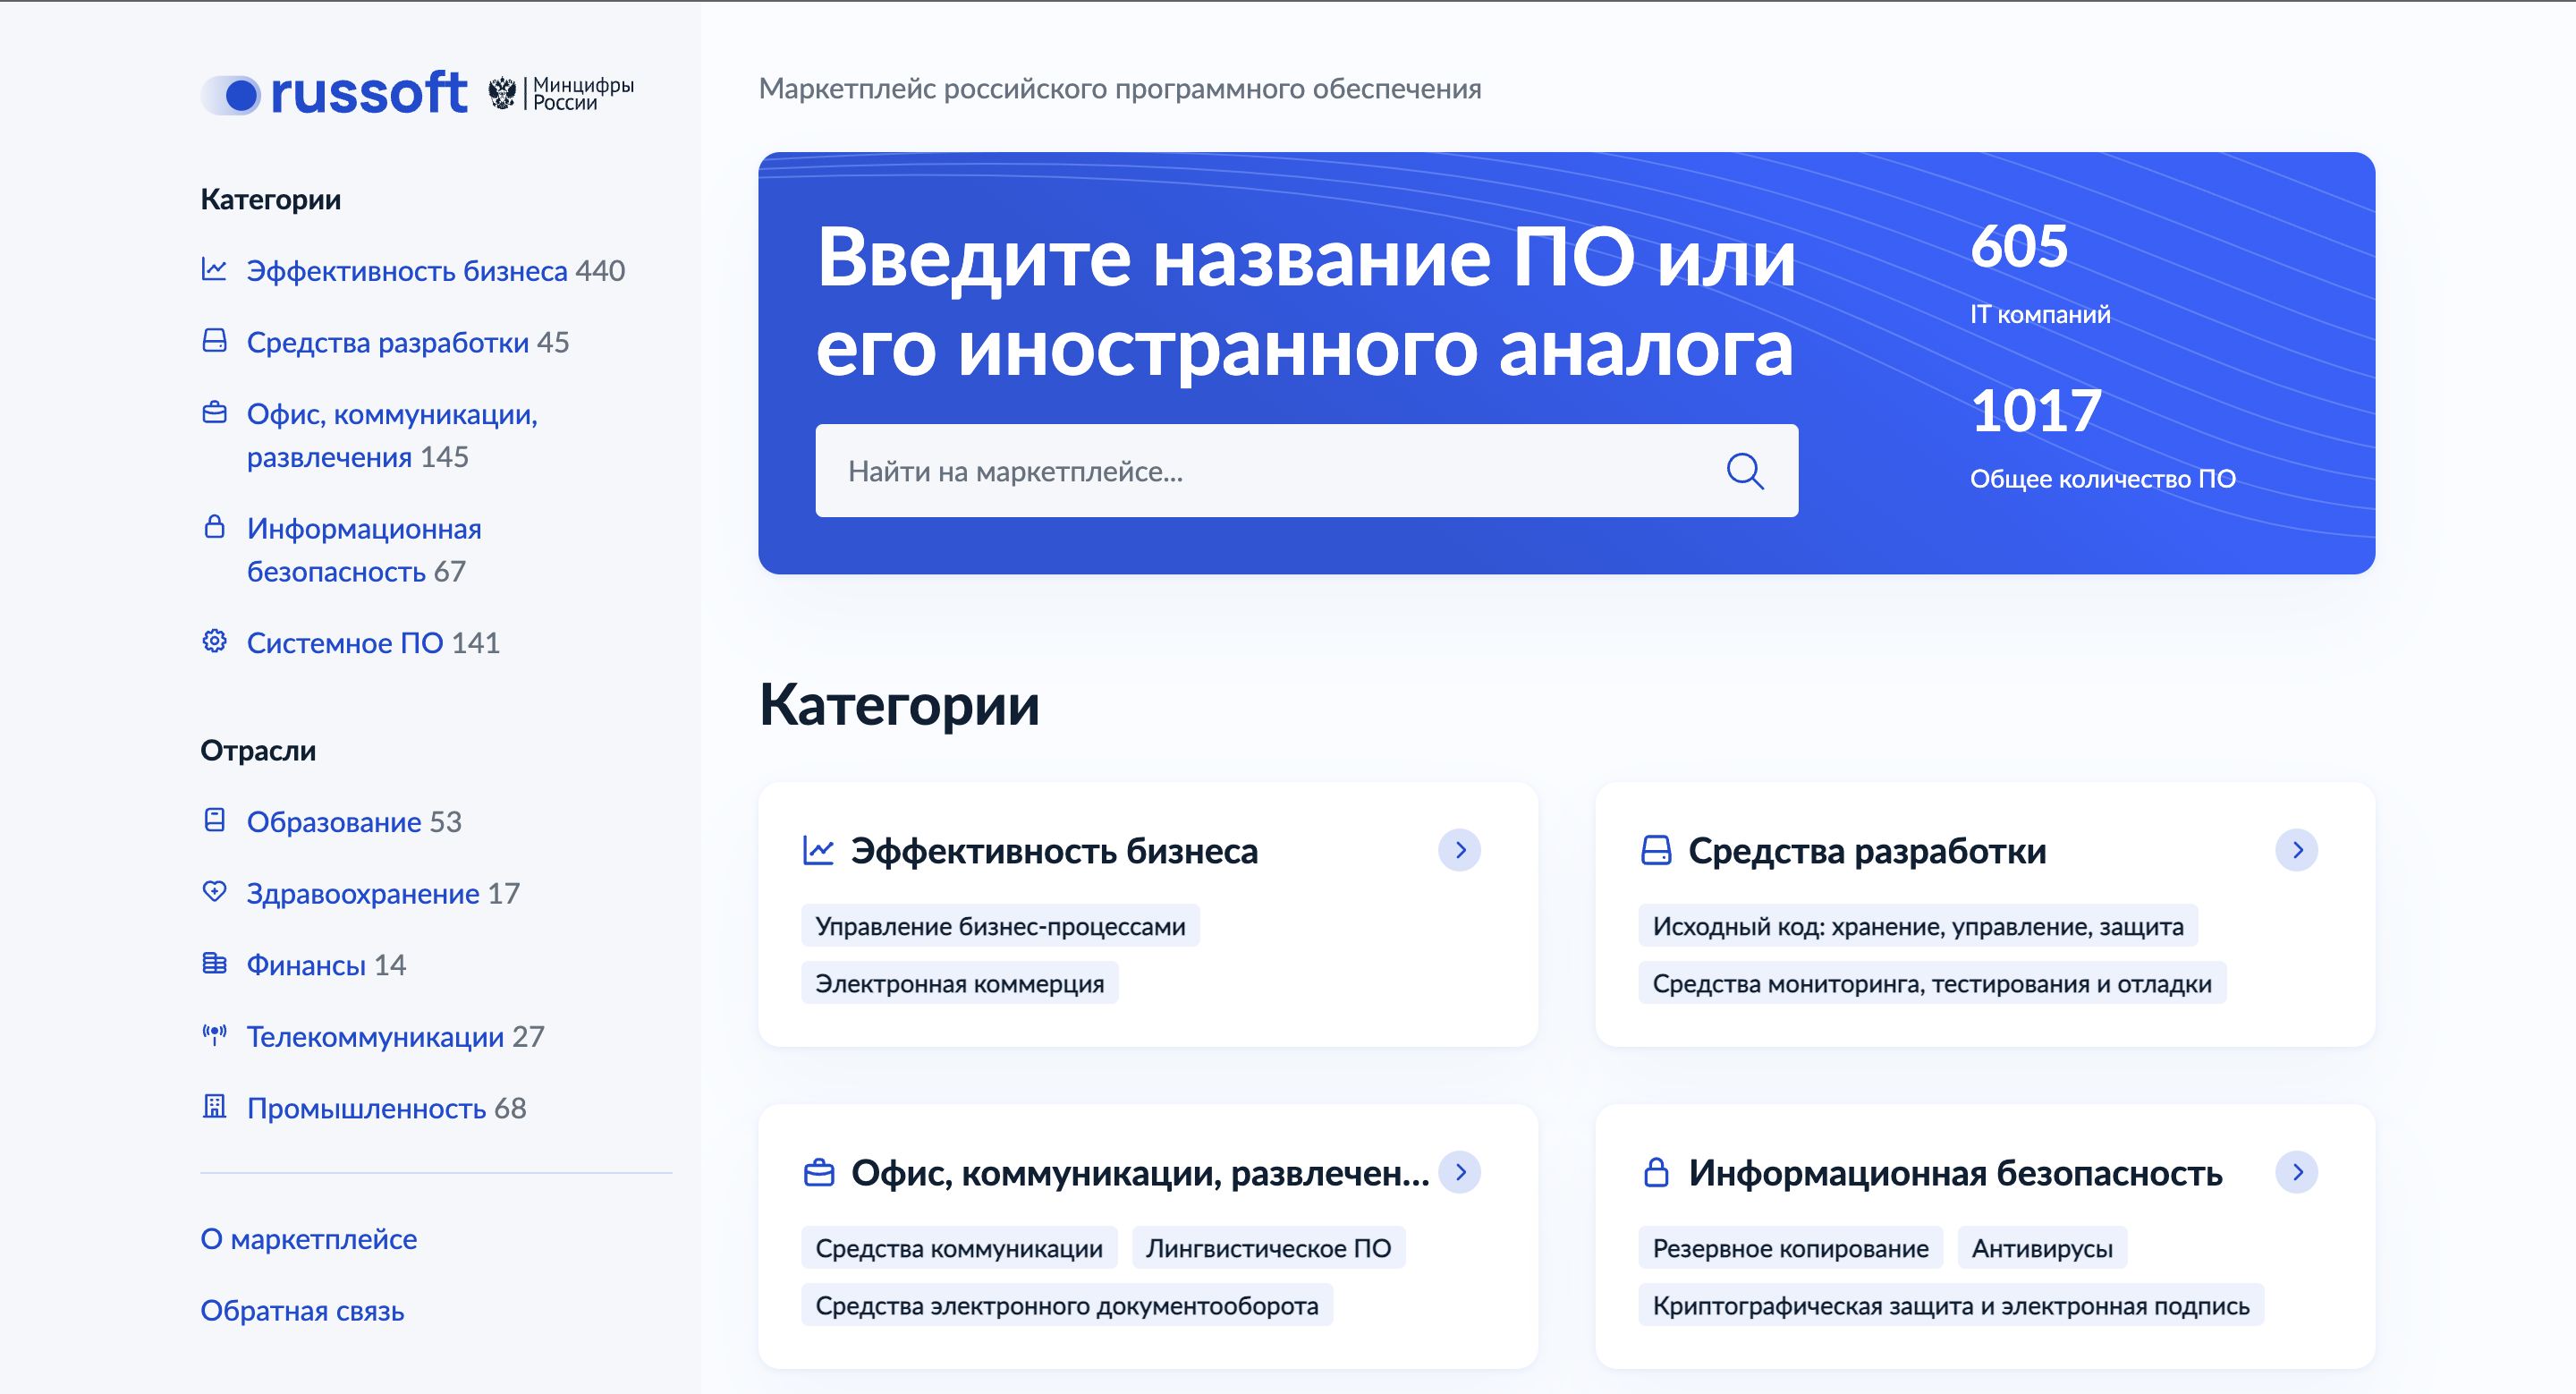 Российские власти запустили онлайн-маркетплейс отечественных компьютерных программ